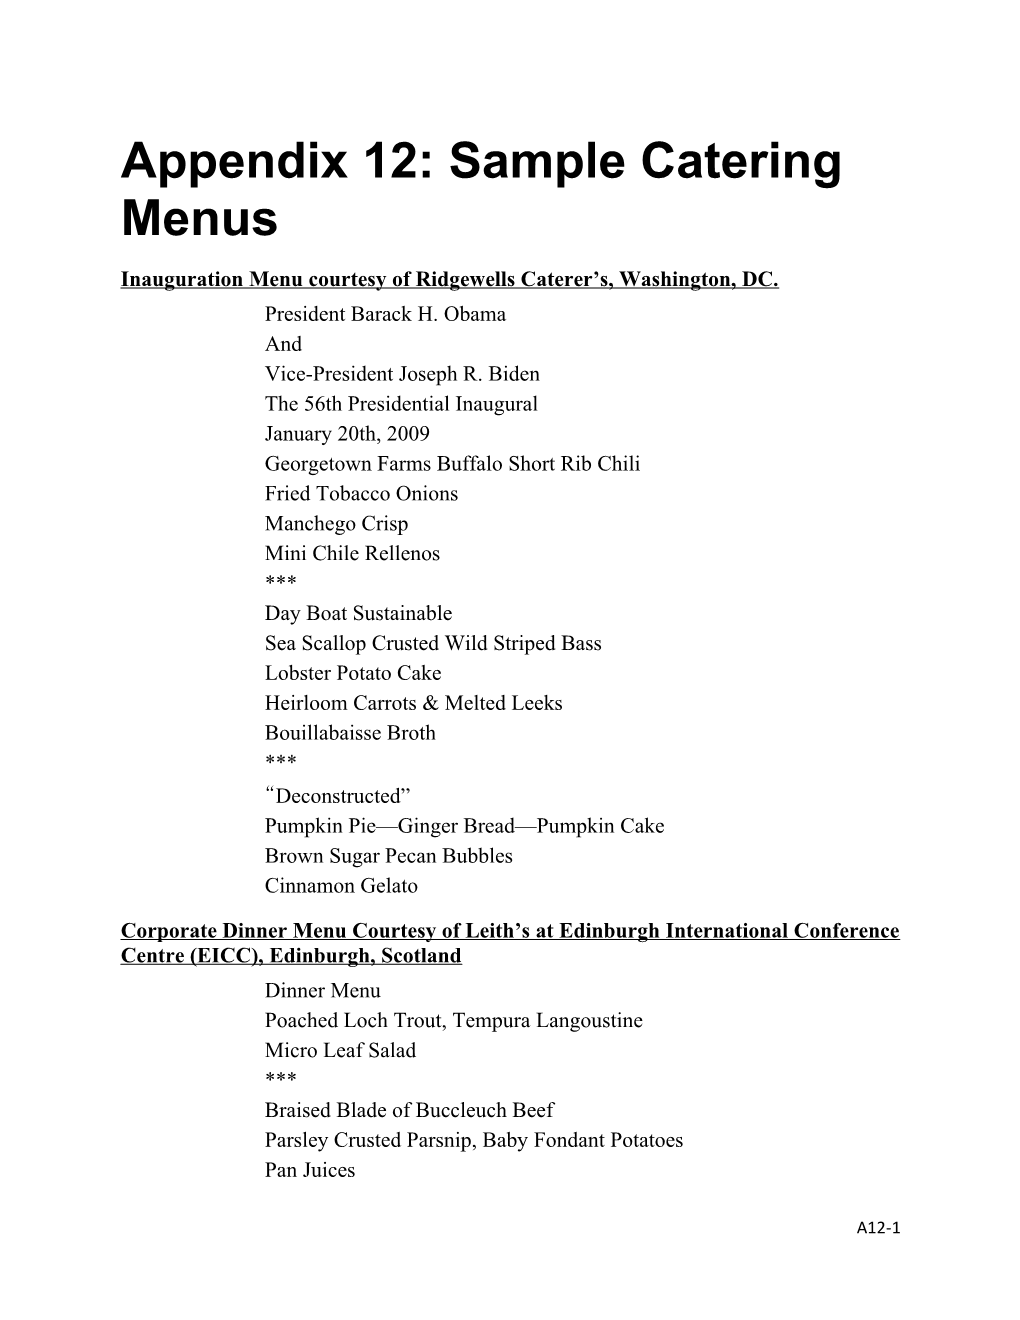 Appendix 12: Sample Catering Menus